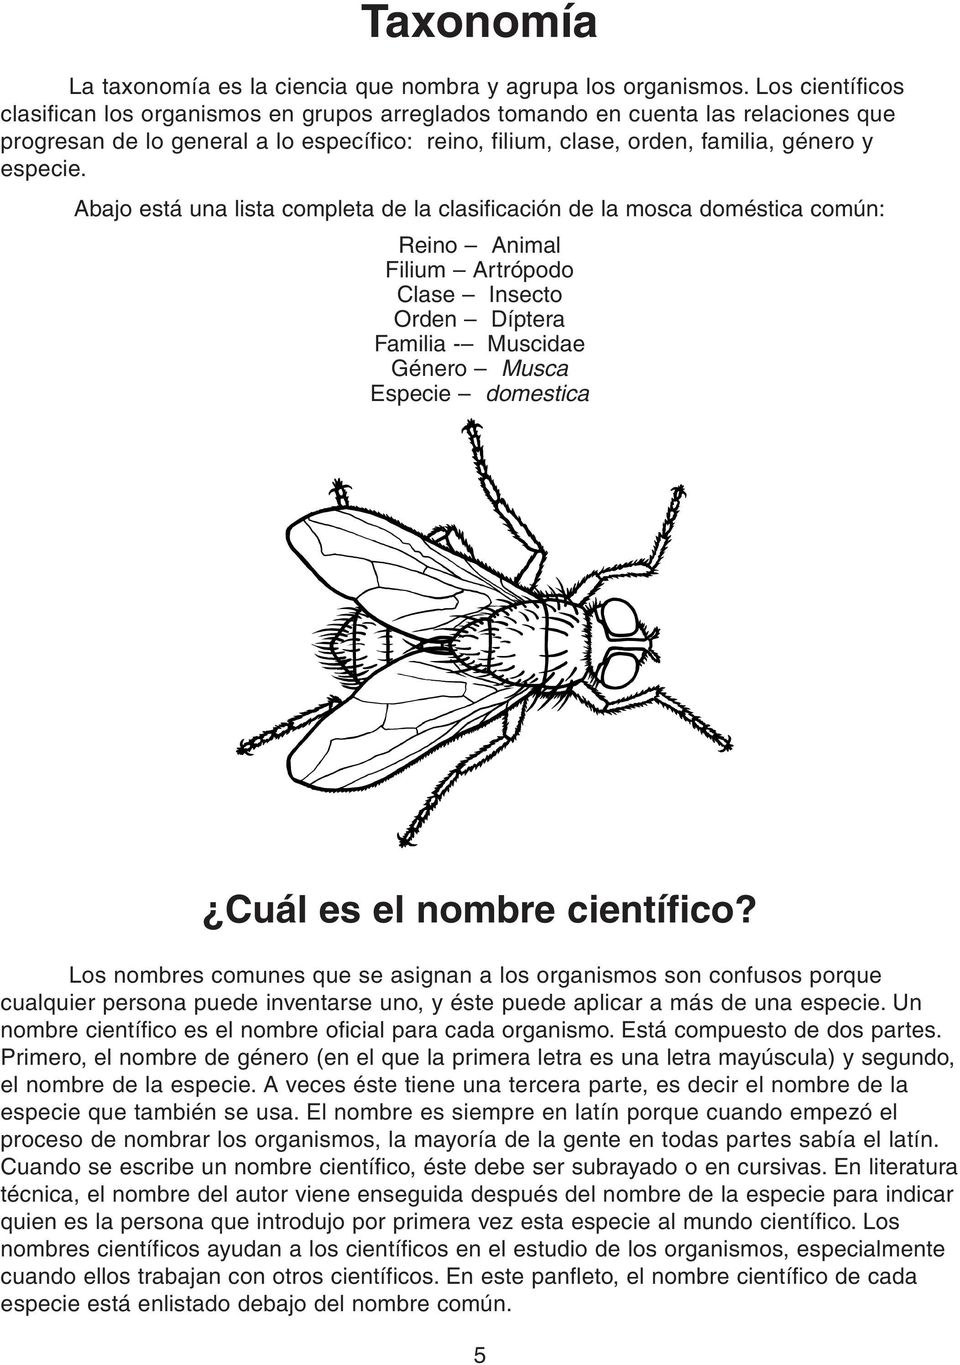 Abajo está una lista completa de la clasificación de la mosca doméstica común: Reino Animal Filium Artrópodo Clase Insecto Orden Díptera Familia - Muscidae Género Musca Especie domestica Cuál es el